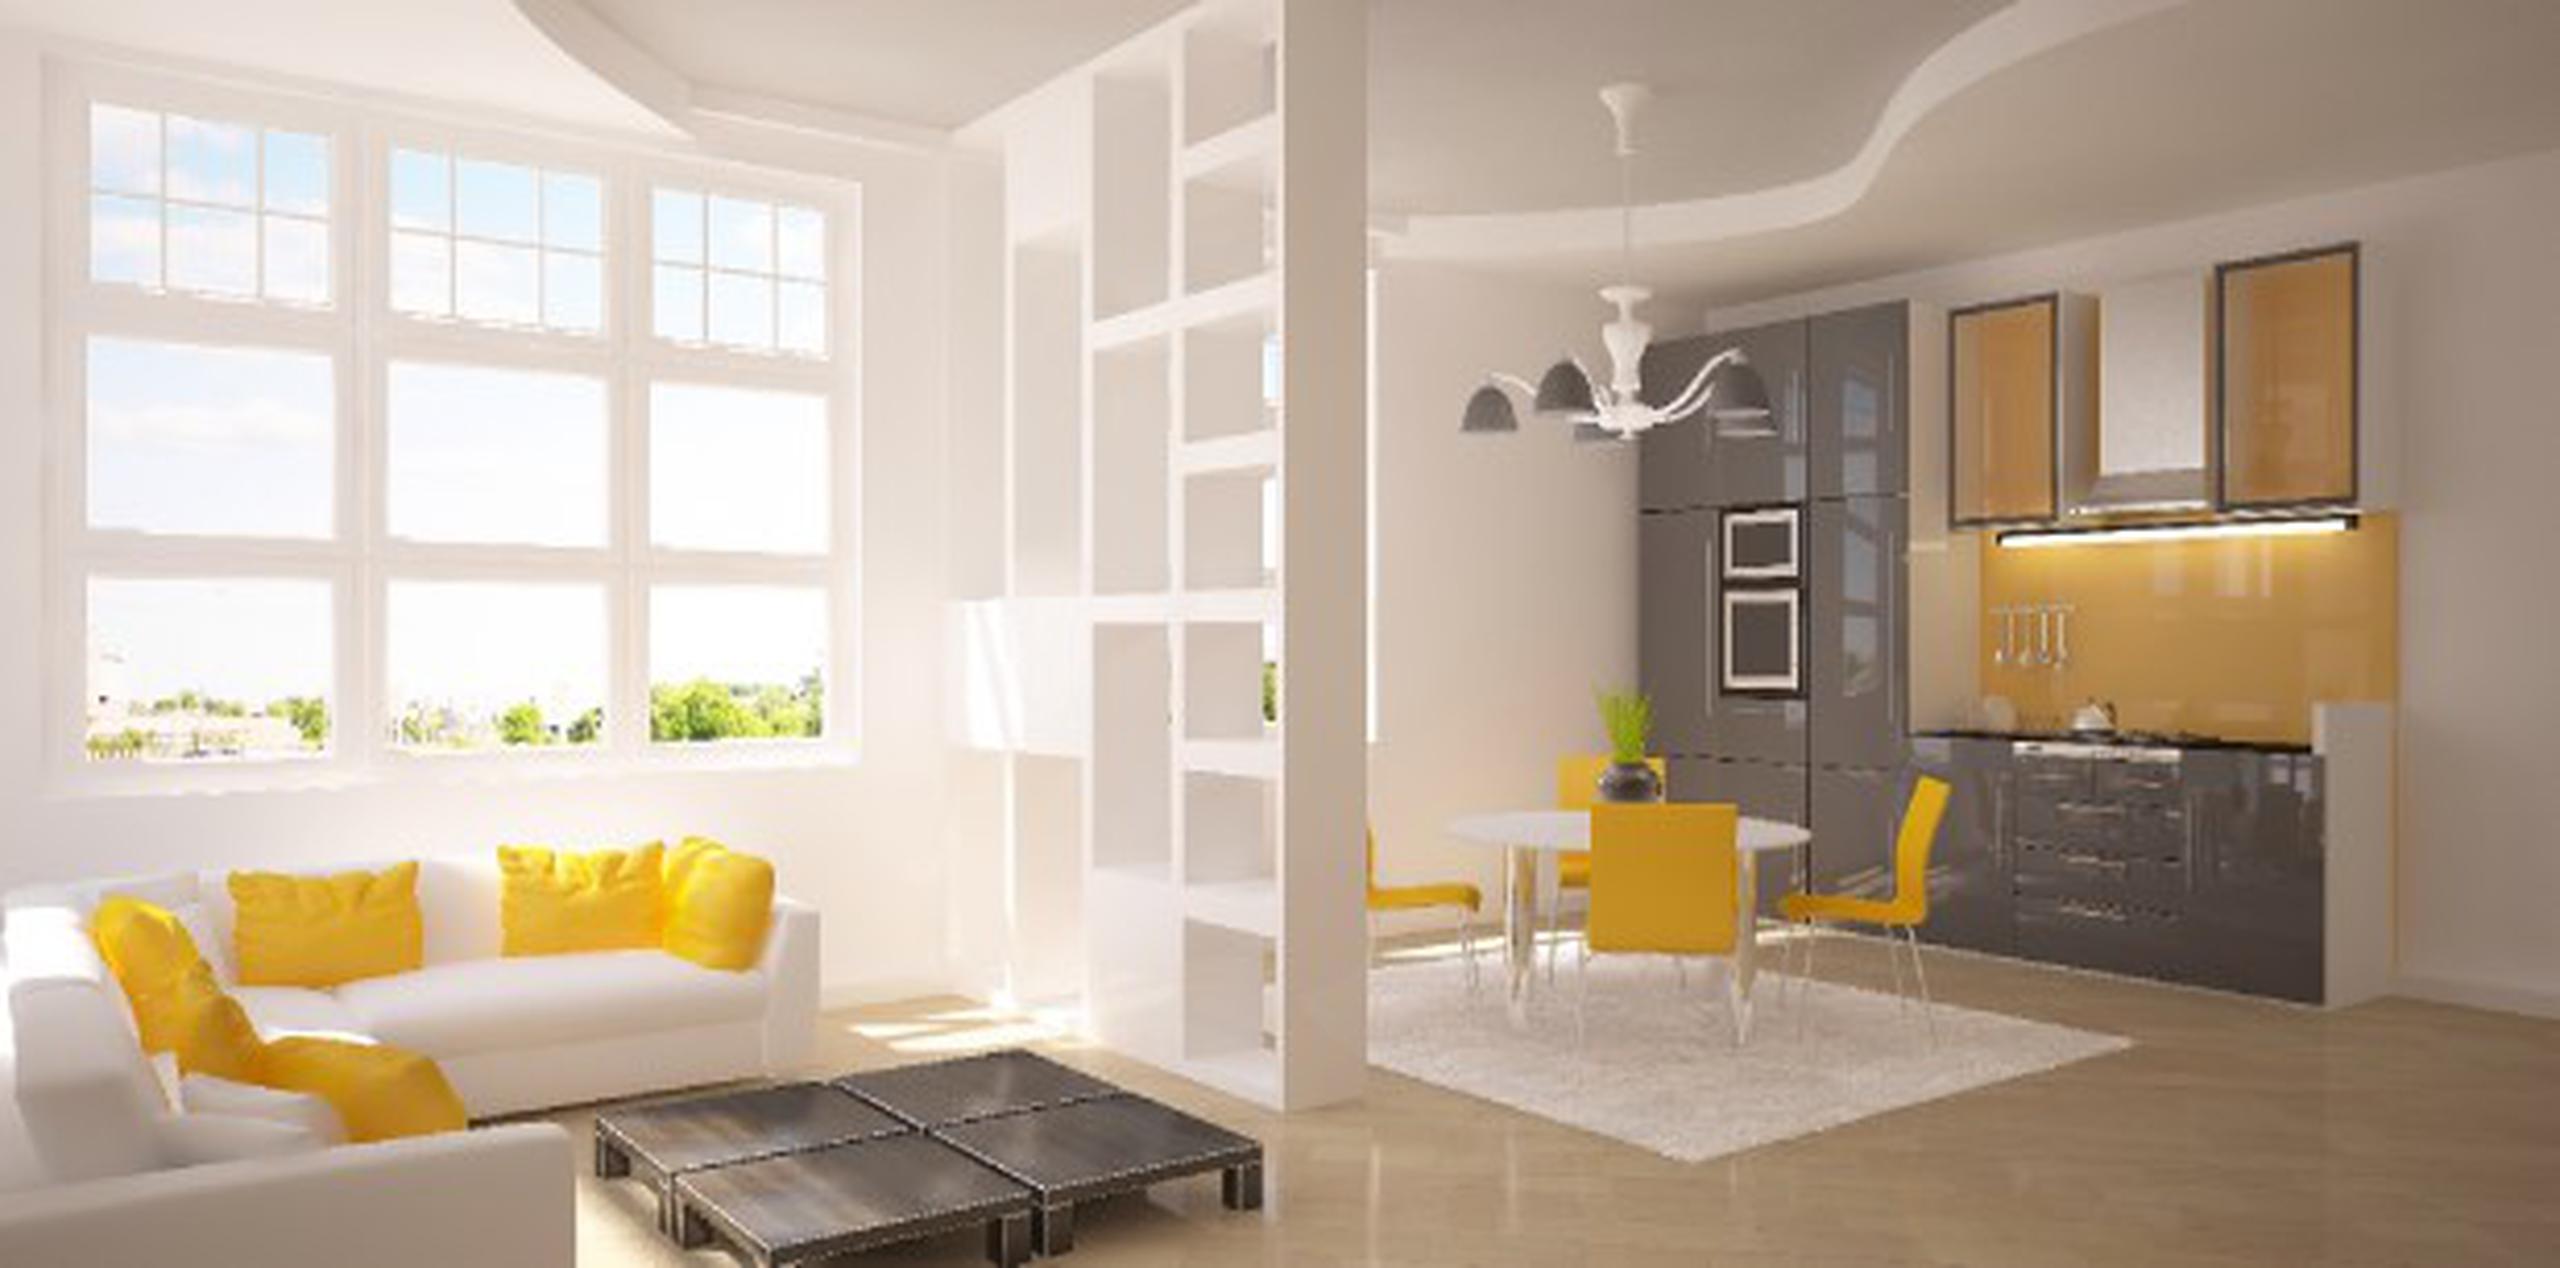 Los biombos como elementos decorativos en tu sala de estar